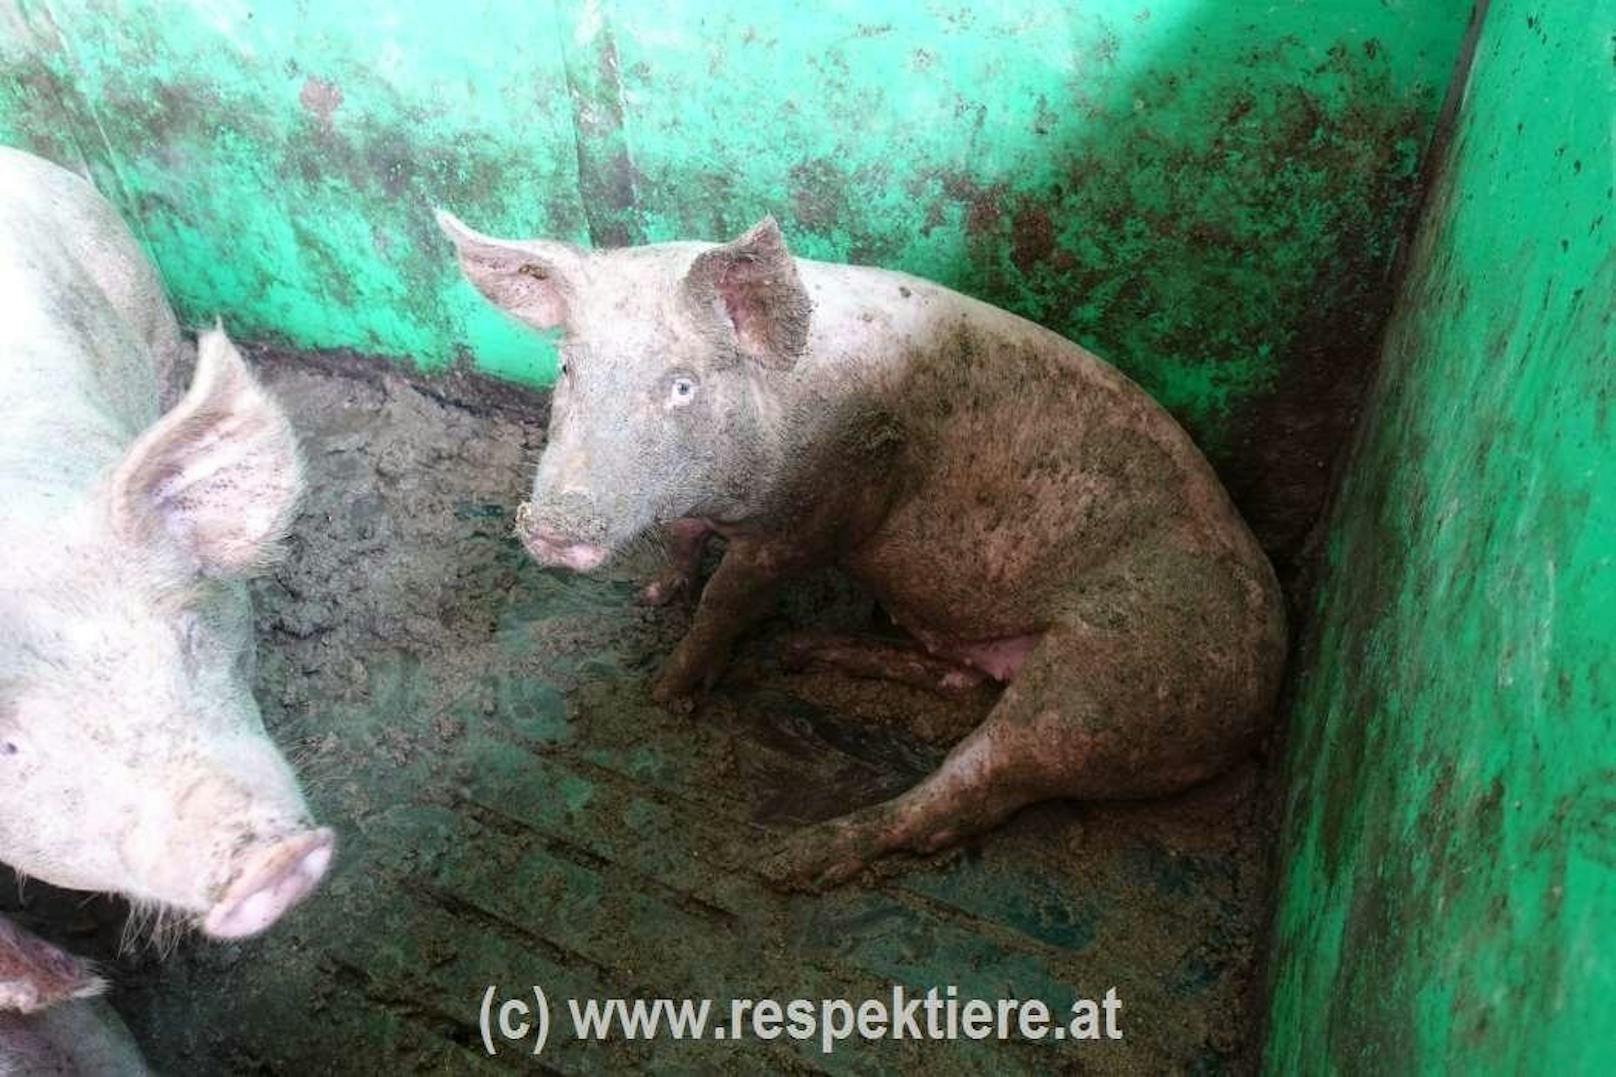 Der Verein "Respektiere" prangert die Zustände in einem Schweinestall in NÖ an.